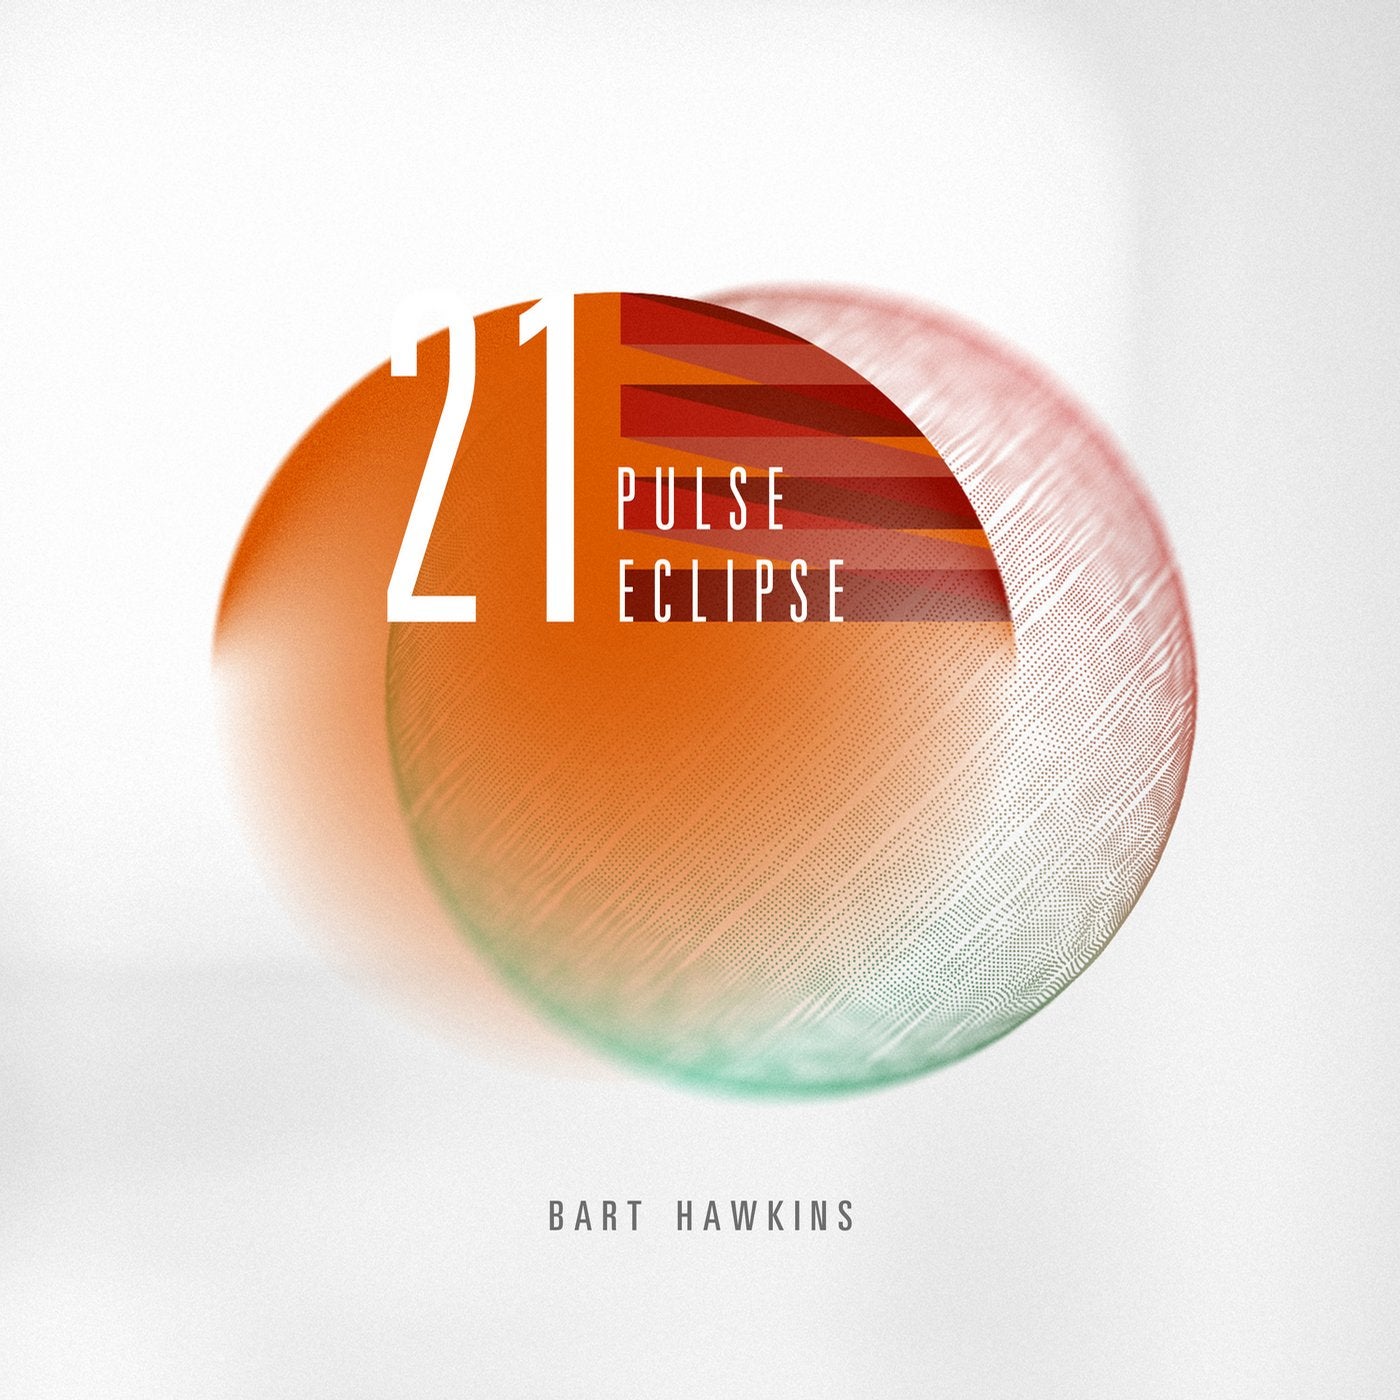 21 Pulse Eclipse